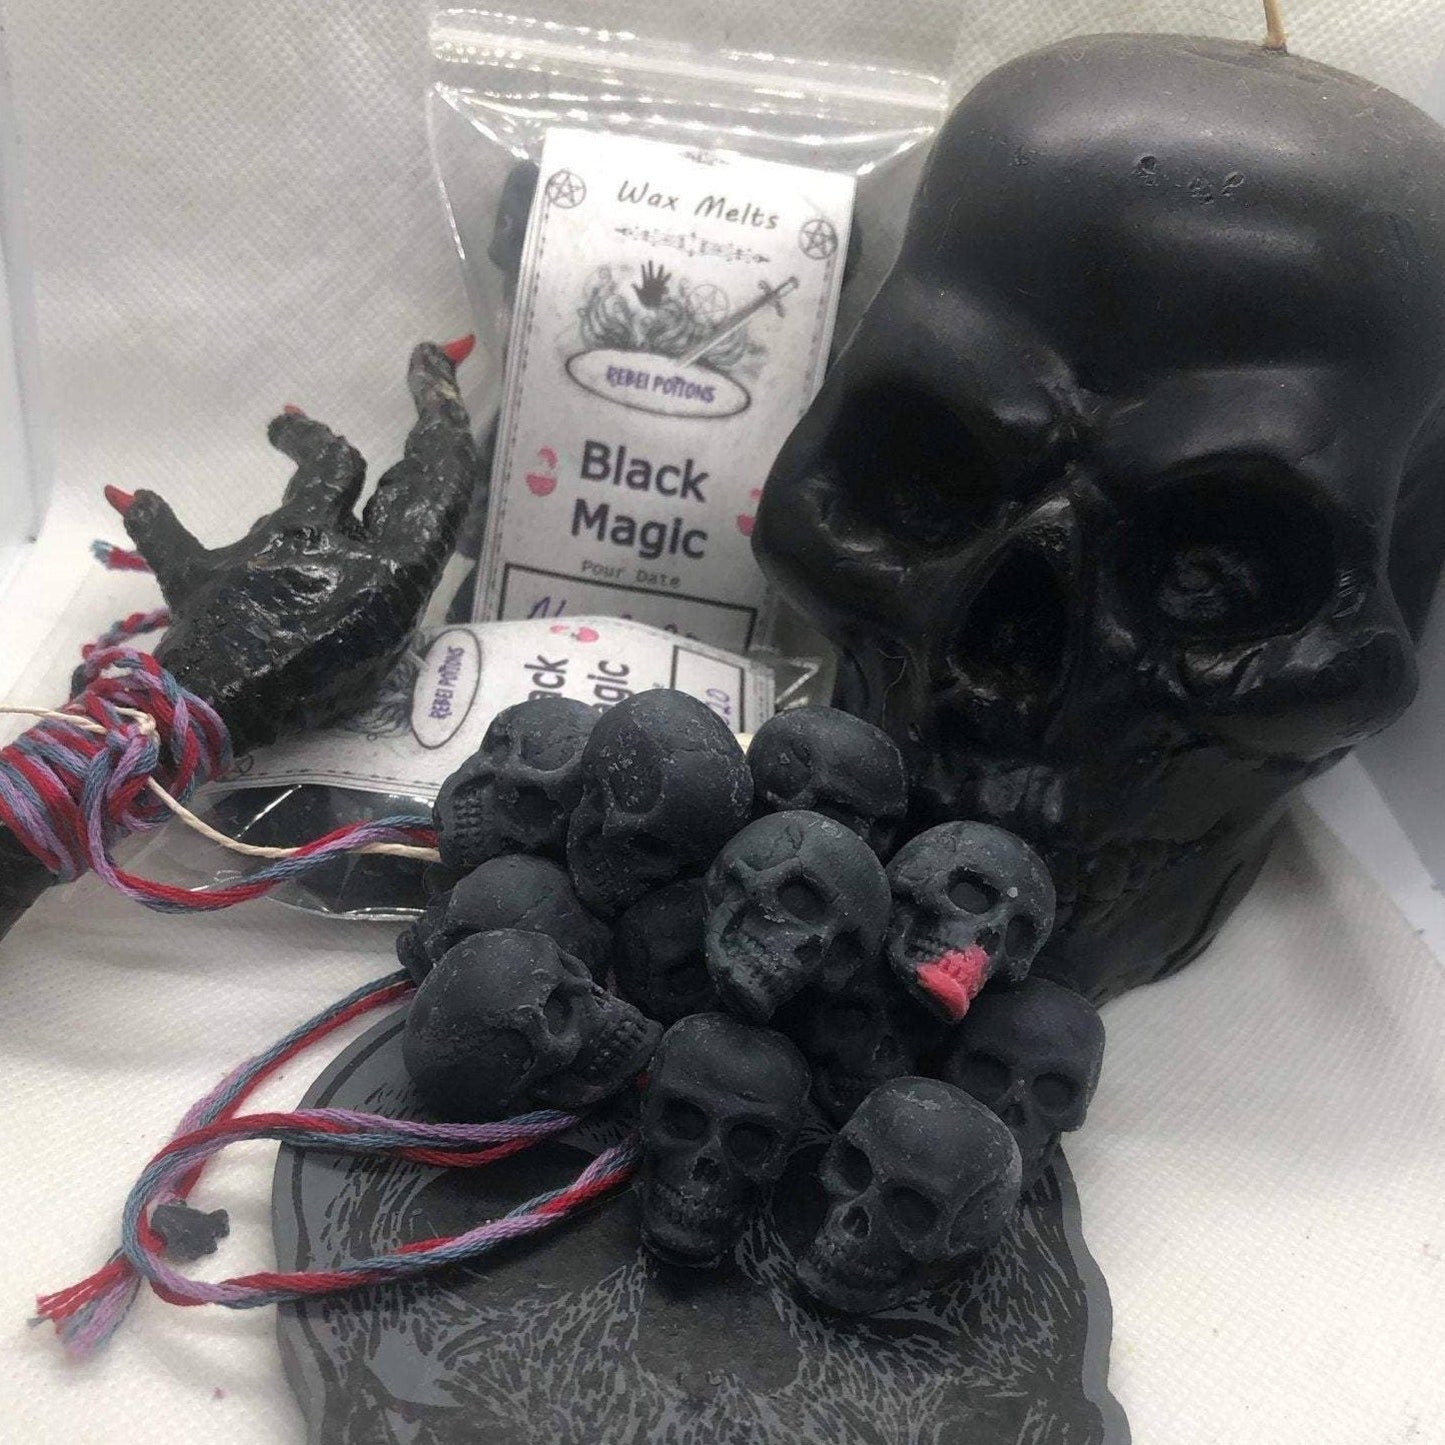 Black Magic Mini Skull Wax Melts